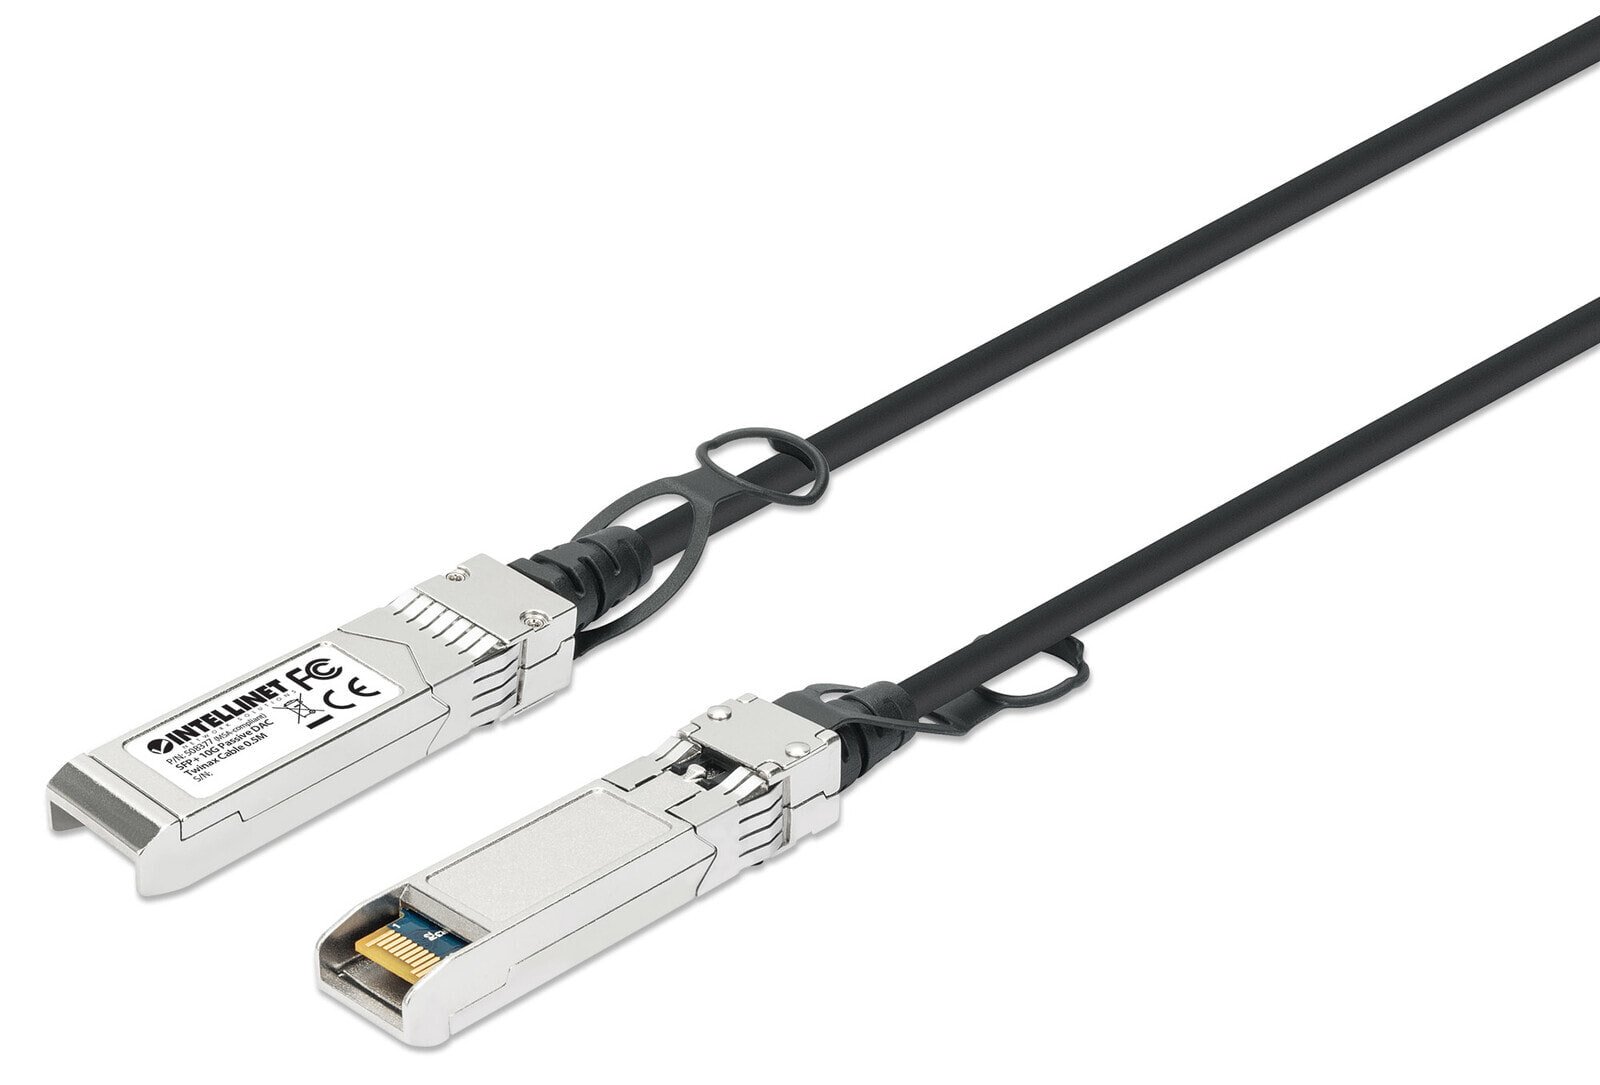 Intellinet 508377 волоконно-оптический кабель 0,5 m SFP+ Черный, Серебристый